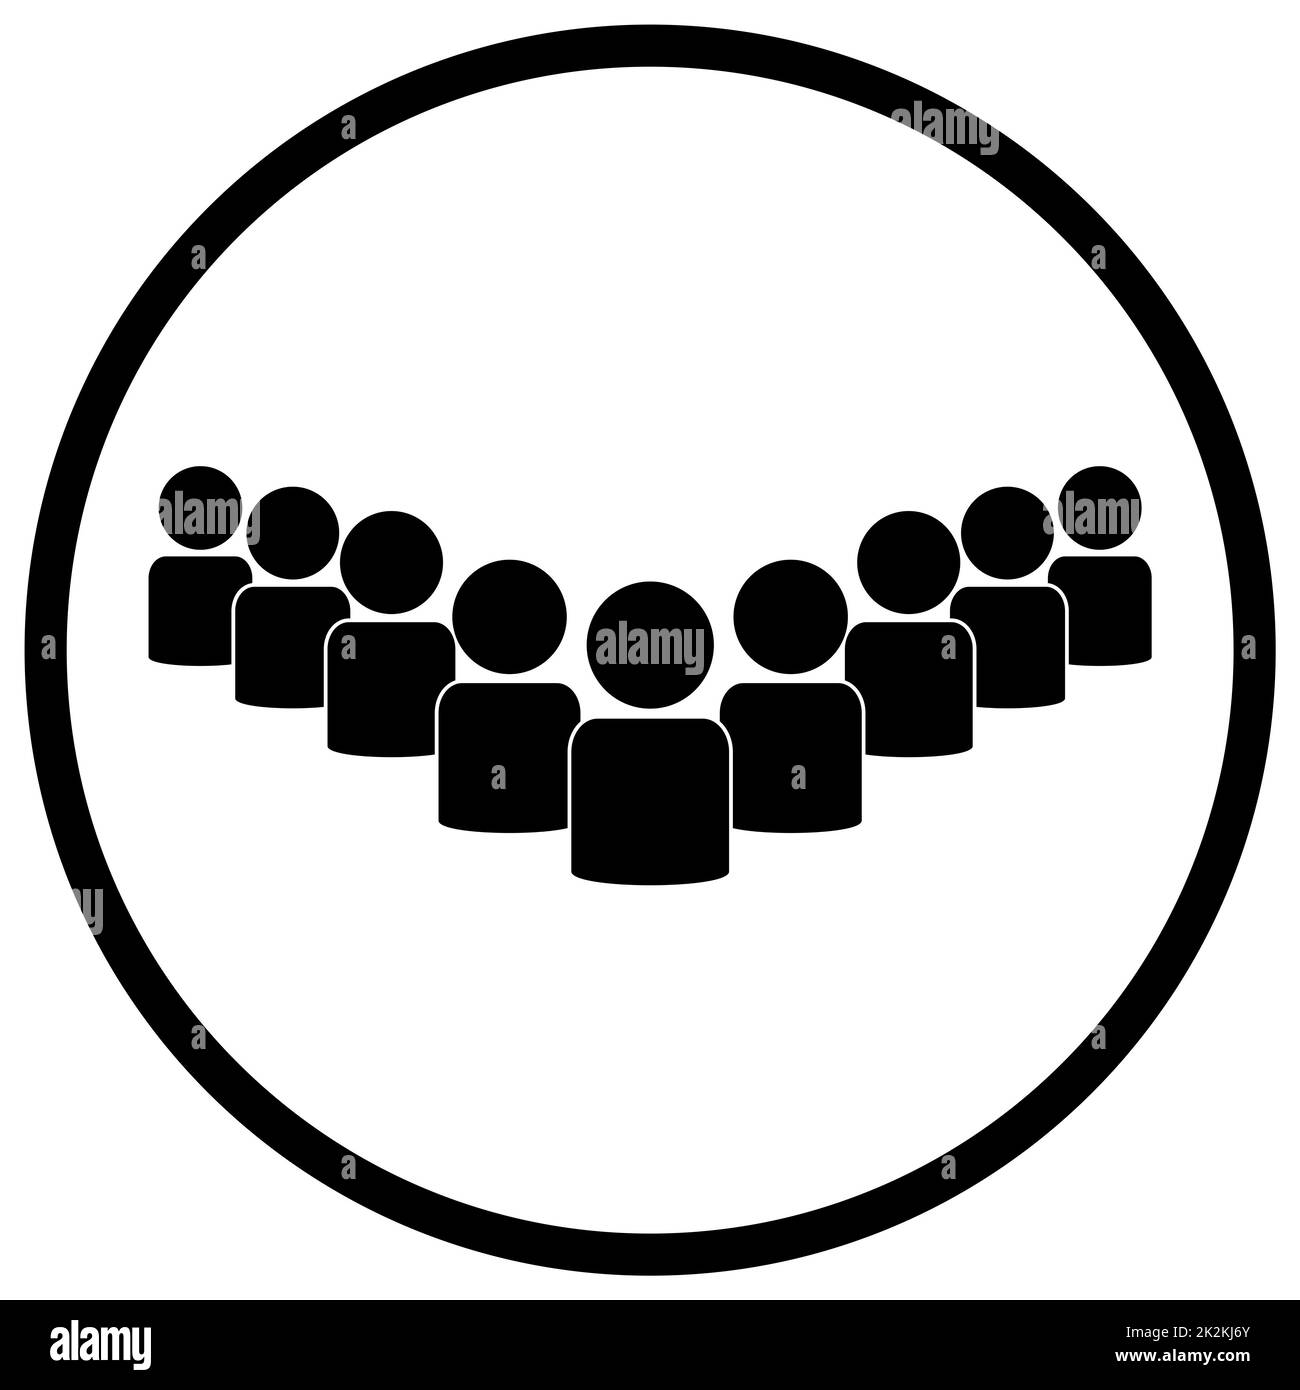 Icône en cercle : groupe, personnel ou communauté Banque D'Images